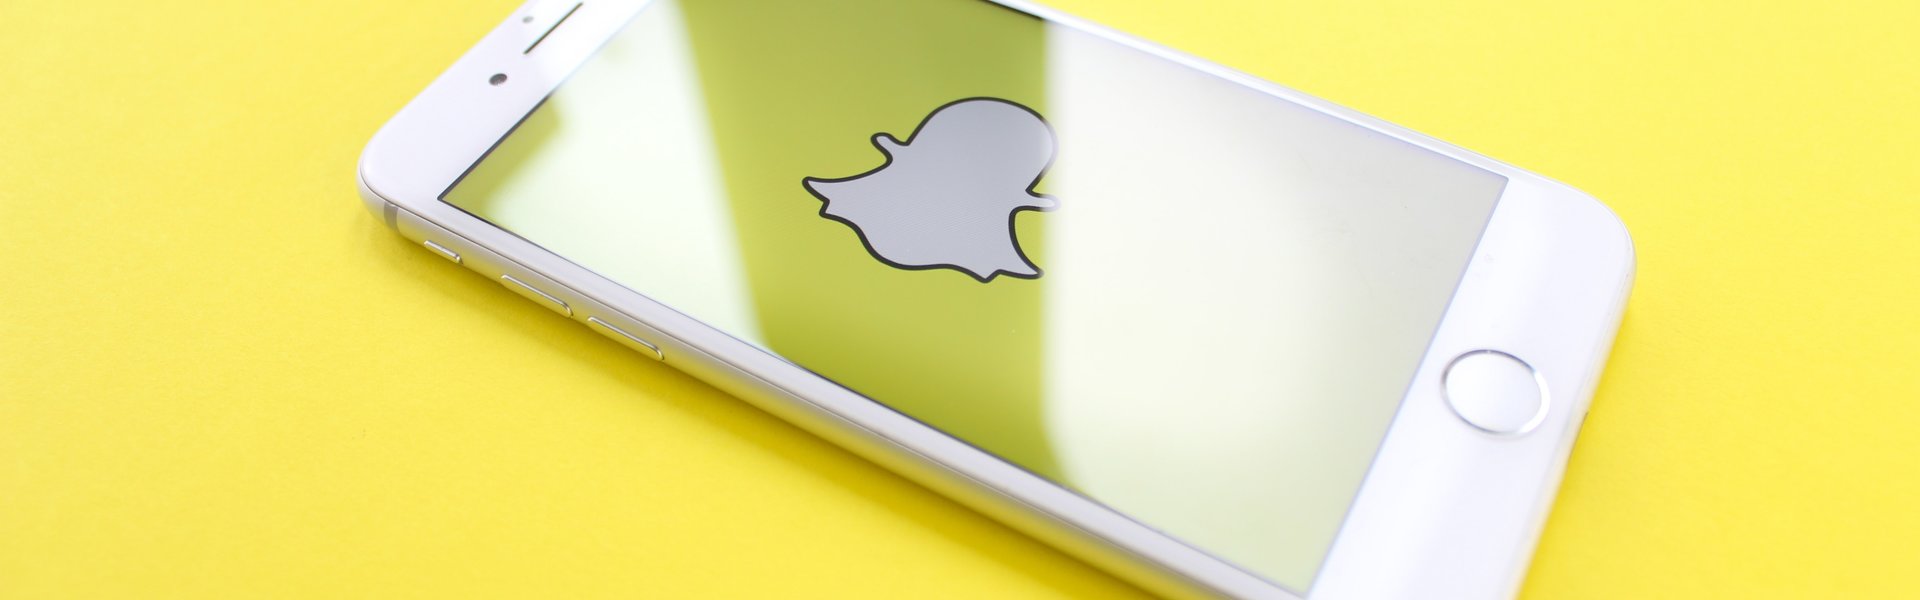 Ako si nastaviť súkromie na Snapchate